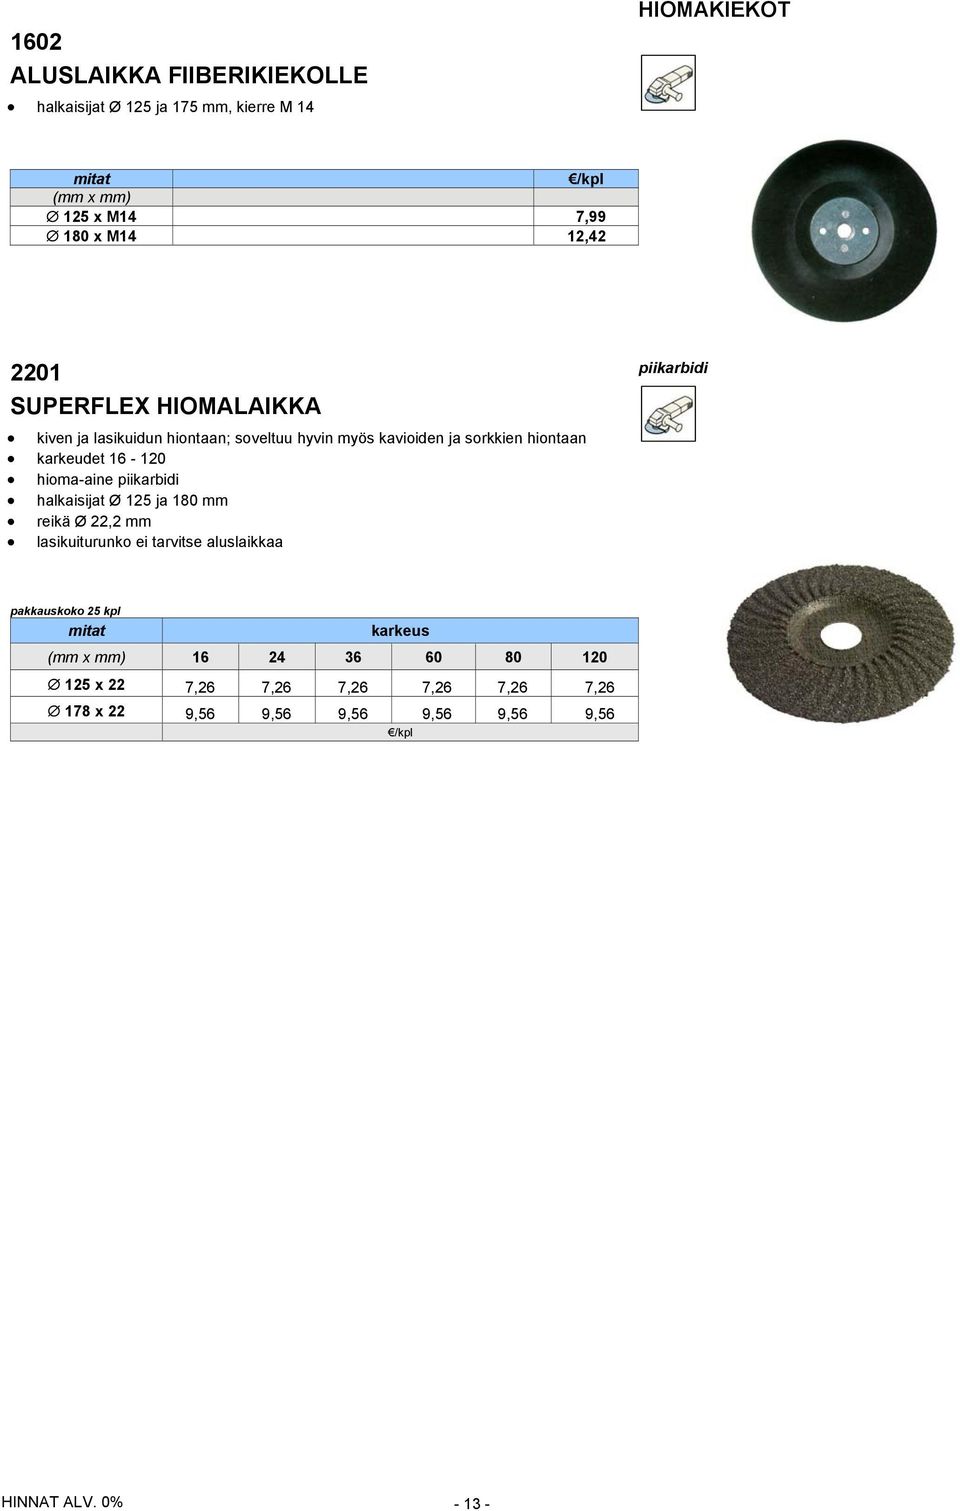 16-120 hioma-aine piikarbidi halkaisijat Ø 125 ja 180 mm reikä Ø 22,2 mm lasikuiturunko ei tarvitse aluslaikkaa pakkauskoko 25